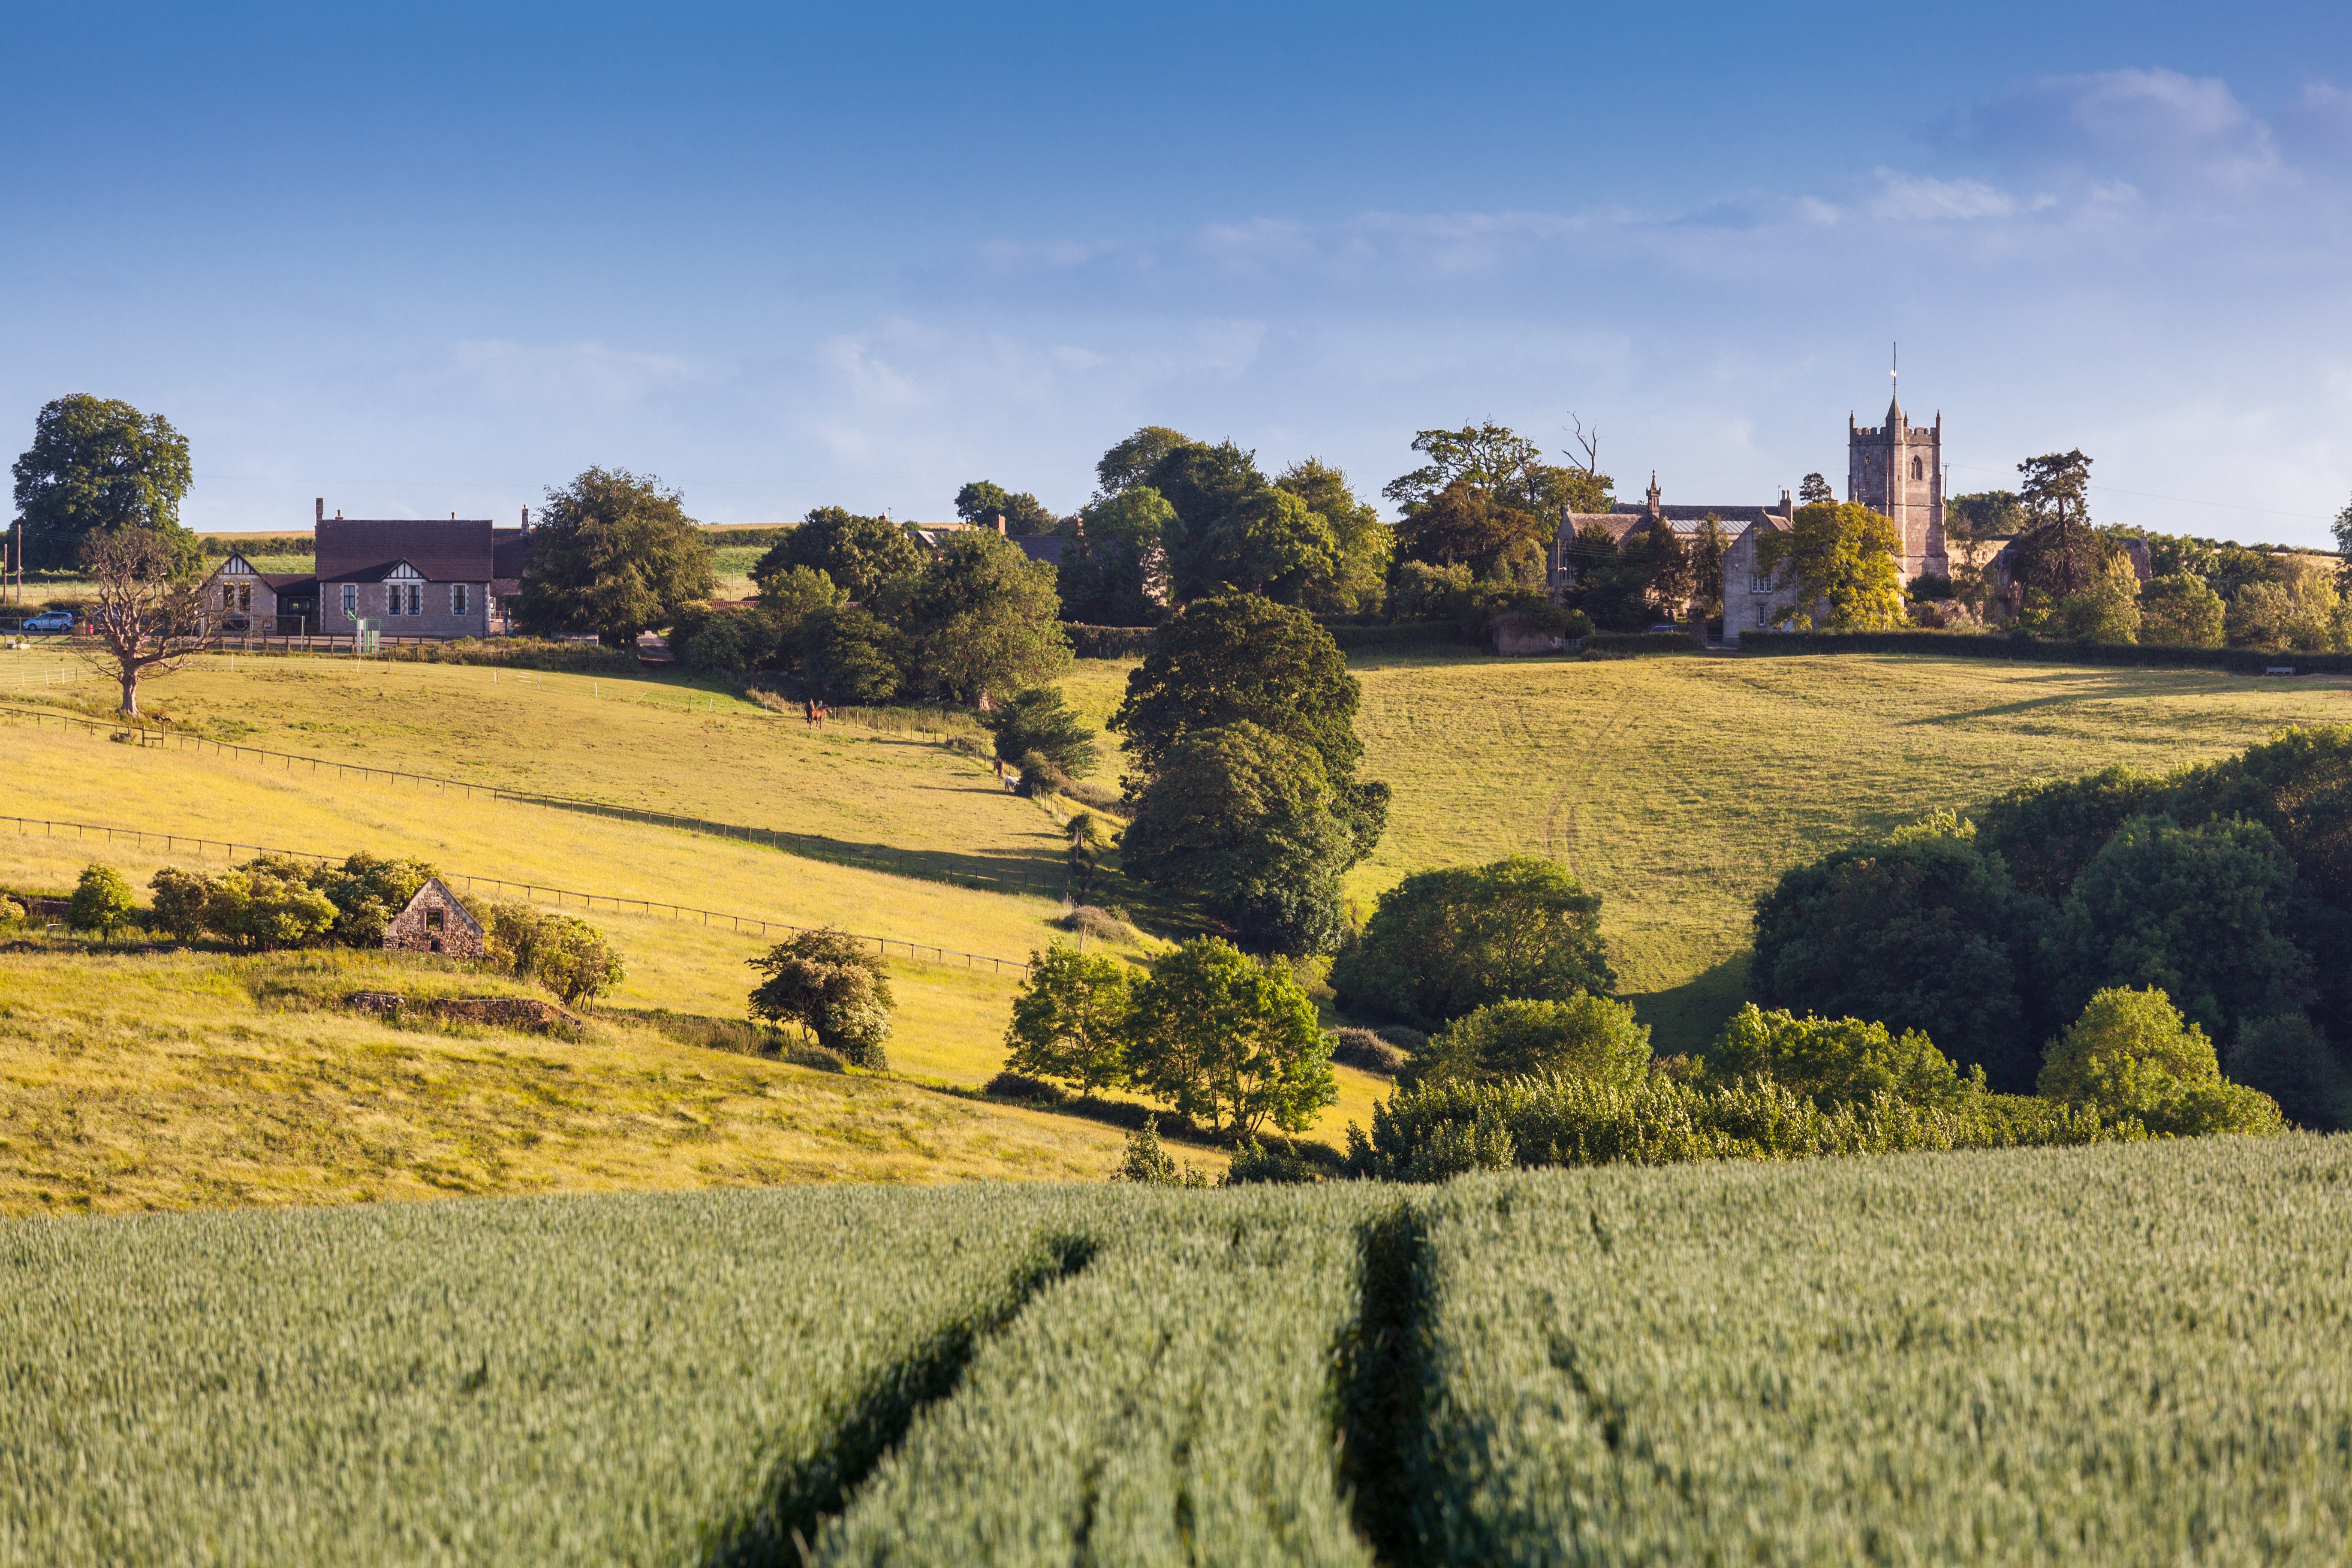 Resa till England - Idylliskt landskap med kyrka och bondgårdar i det brittiska landsbygden, gröna fält och blå himmel.